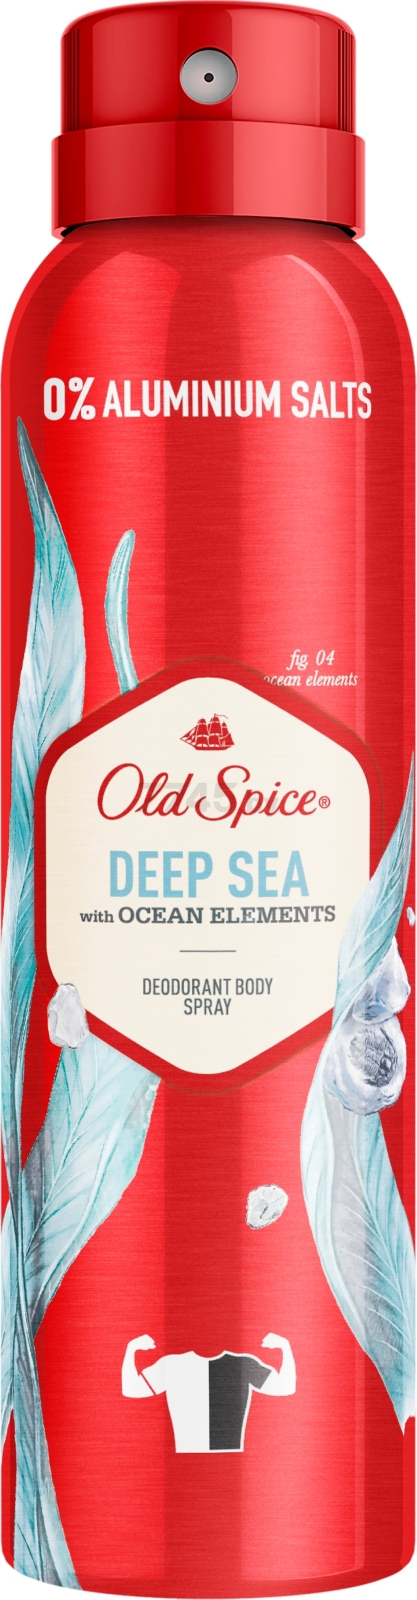 Дезодорант аэрозольный OLD SPICE Deep sea 150 мл (8001841282398)